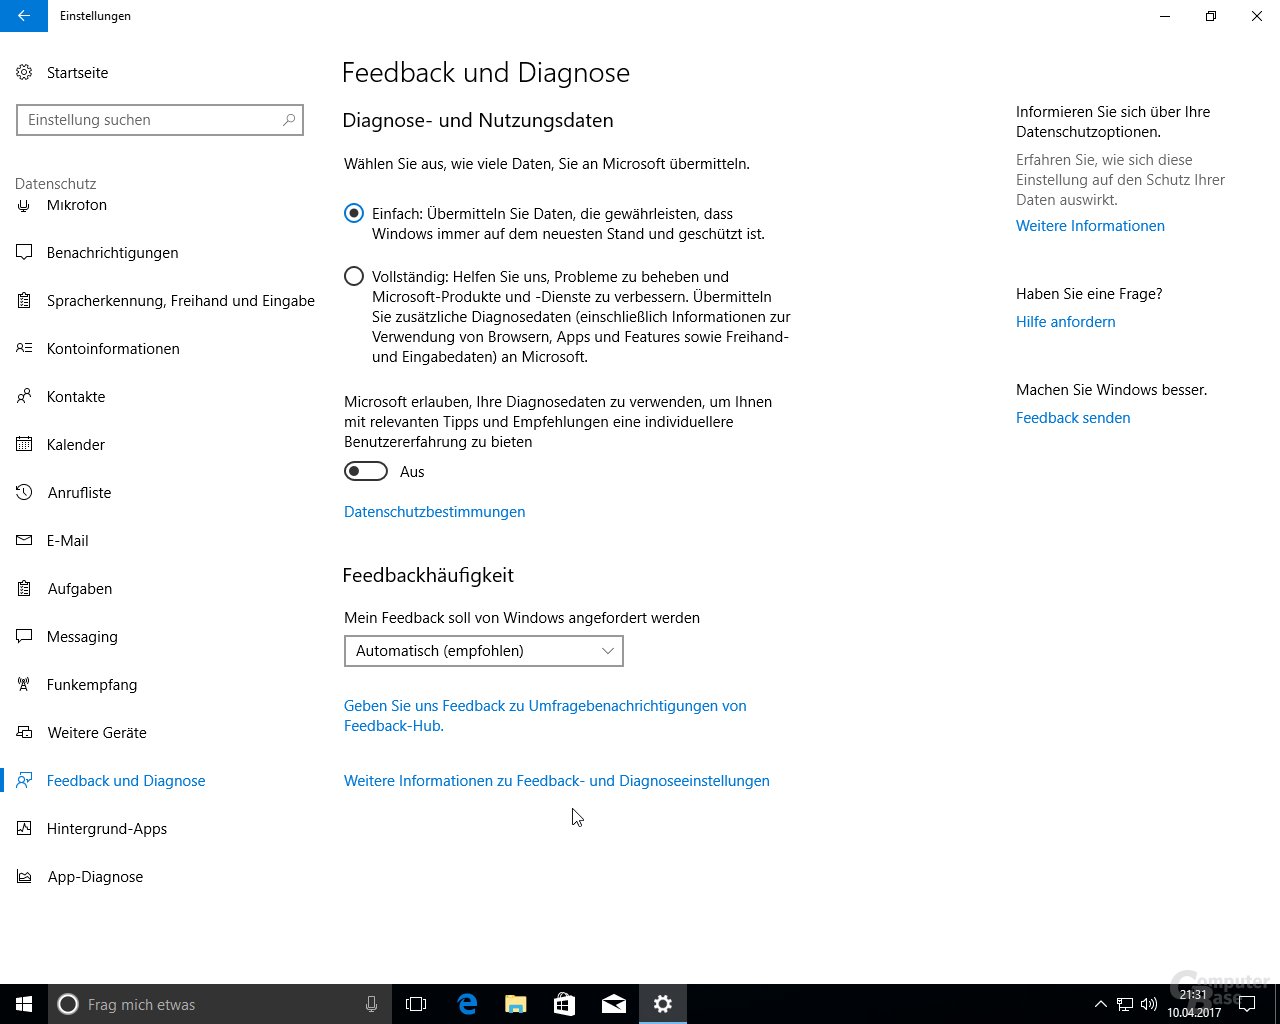 Windows 10 Creators Update: Neue Auswahl bei den Diagnose- und Nutzungsdaten